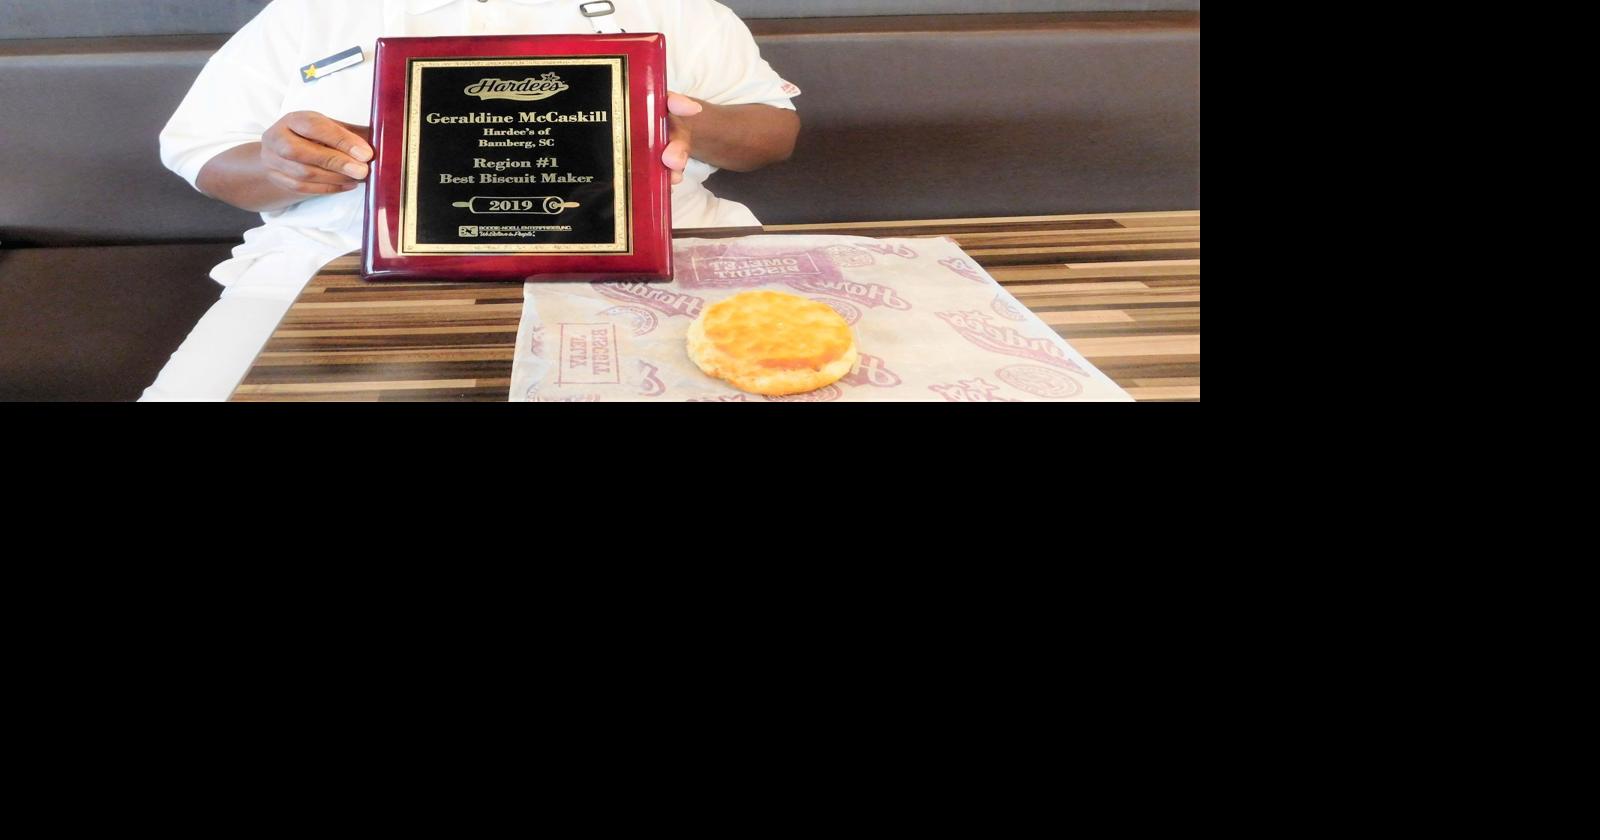 Virginia Beach Hardee's Biscuit Maker Wins Top Award in Biscuit